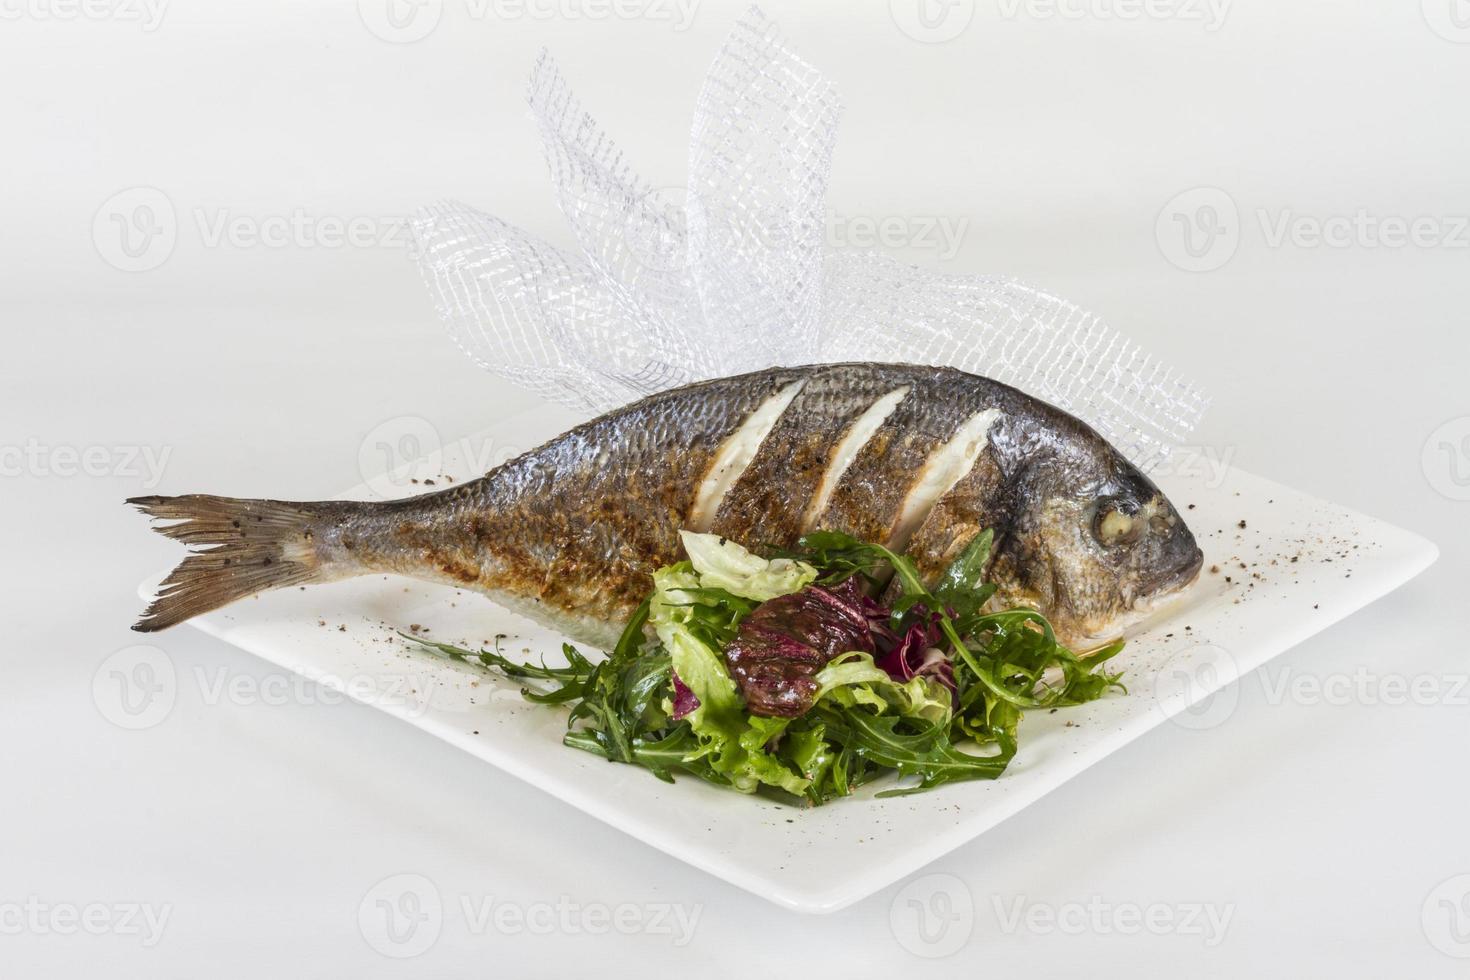 dorada fisk med sallad på den vita plattan. studio skott foto